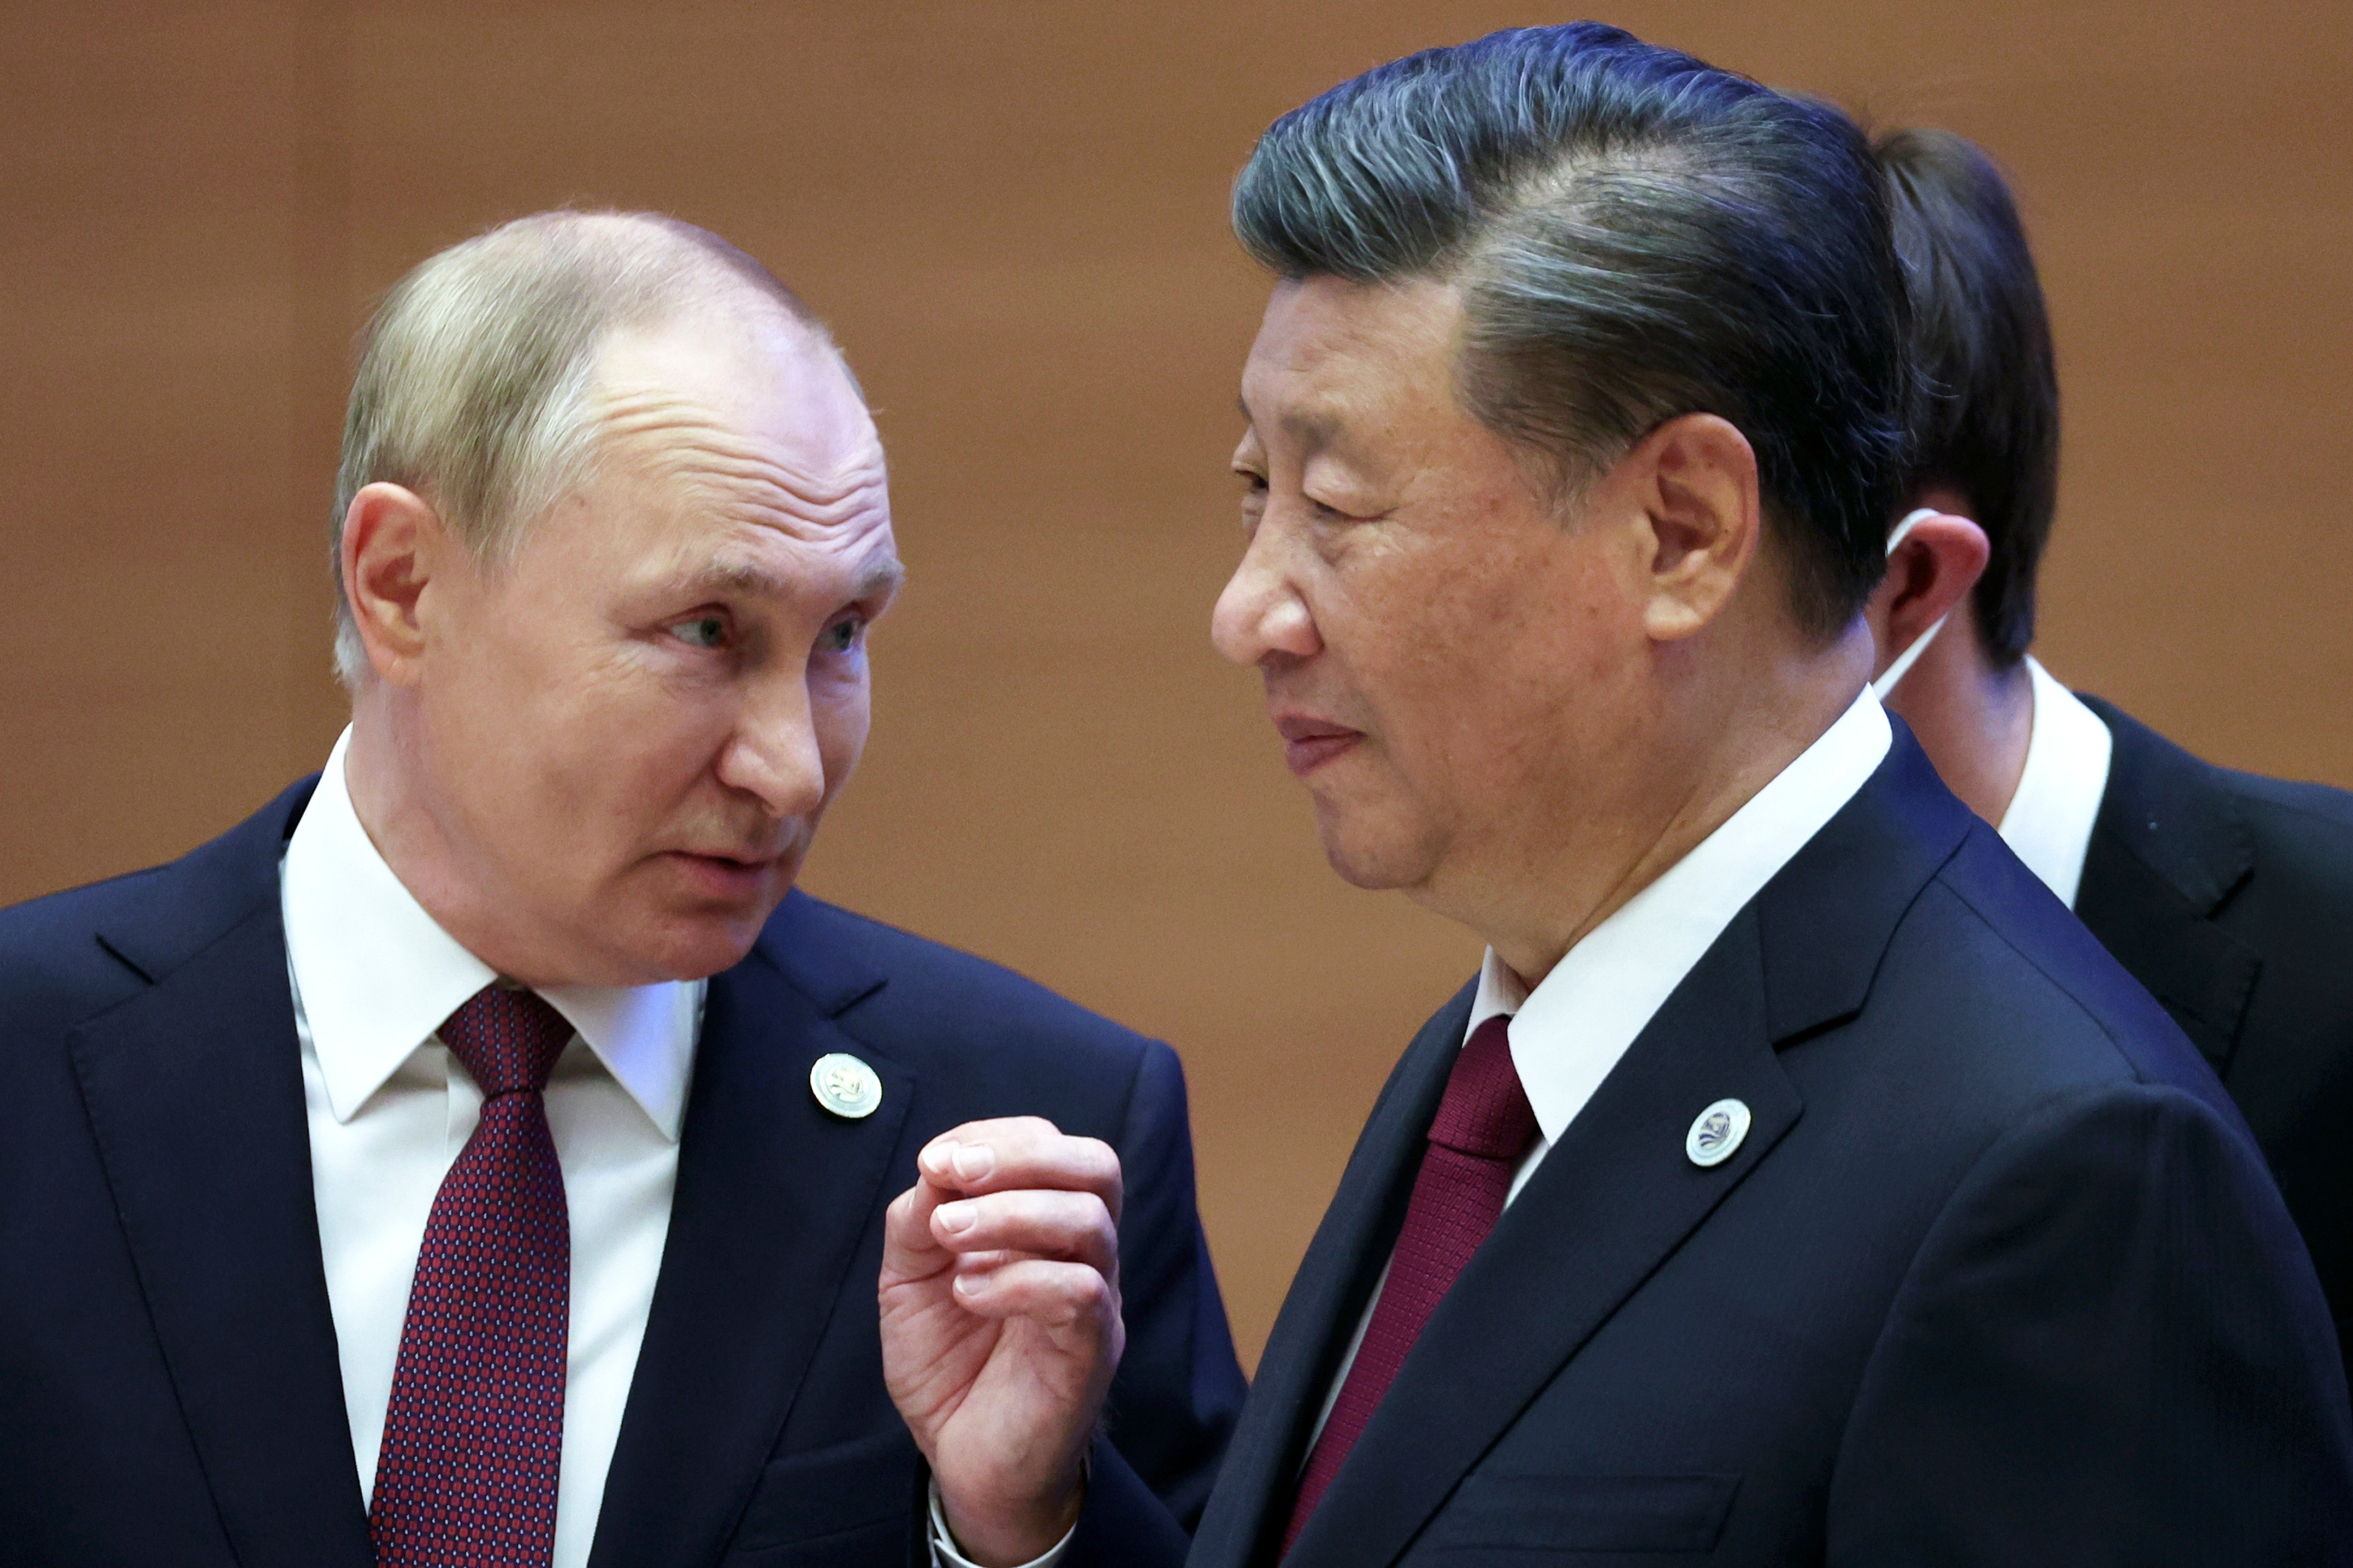 APTOPIX Uzbekistan Xi Putin Summit